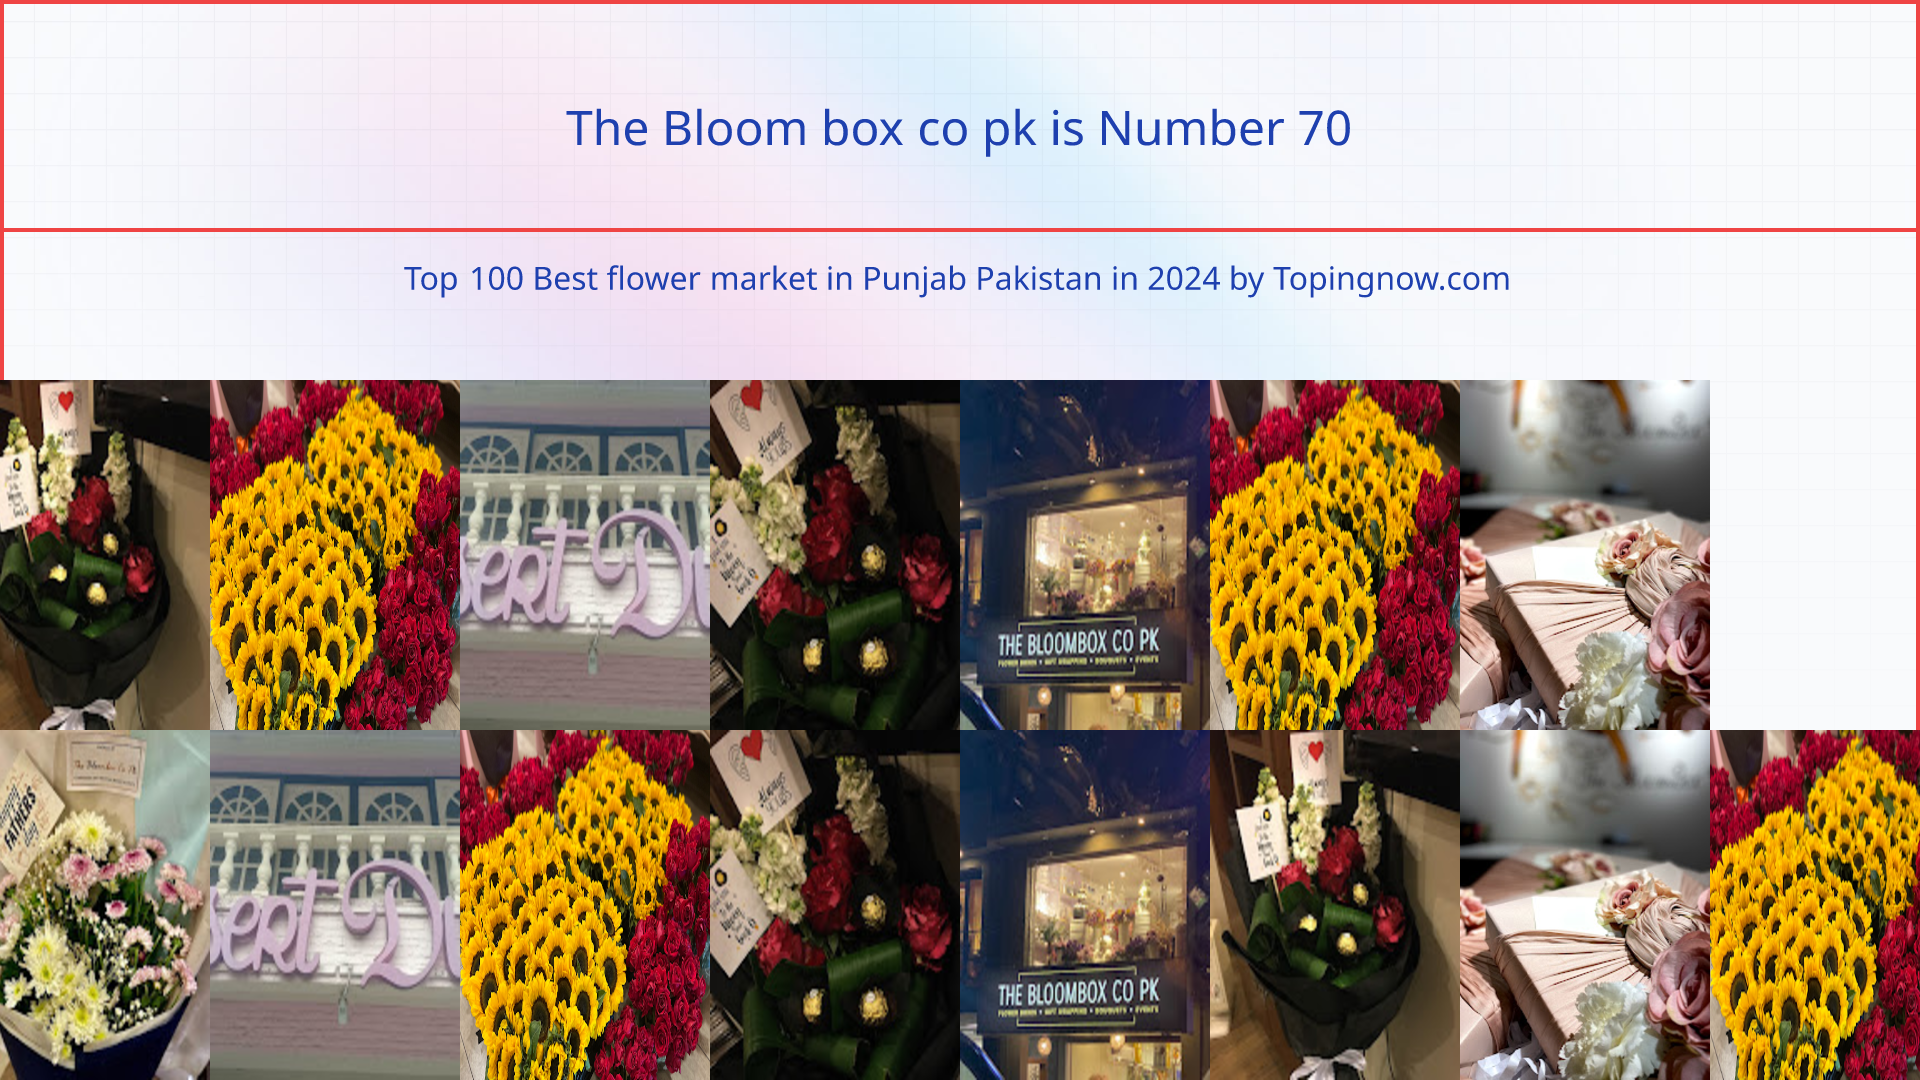 The Bloom box co pk: Top 100 Best flower market in Punjab Pakistan in 2024